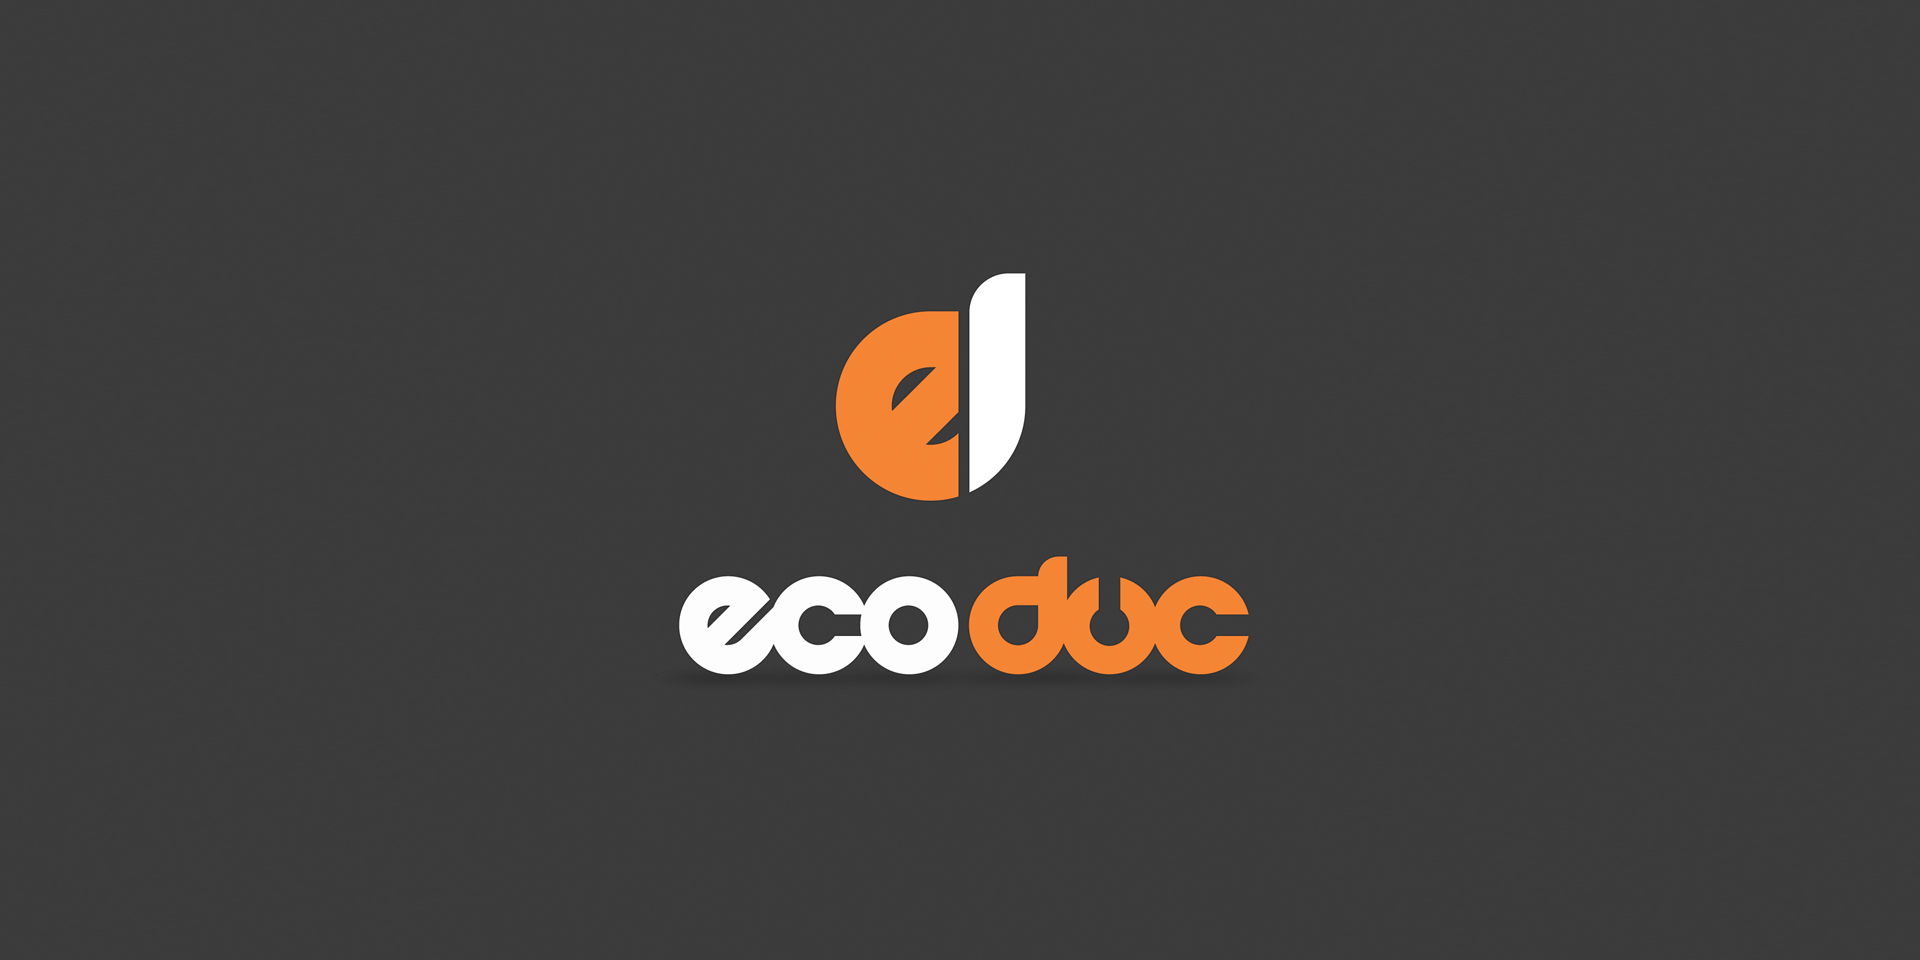 EcoDuc